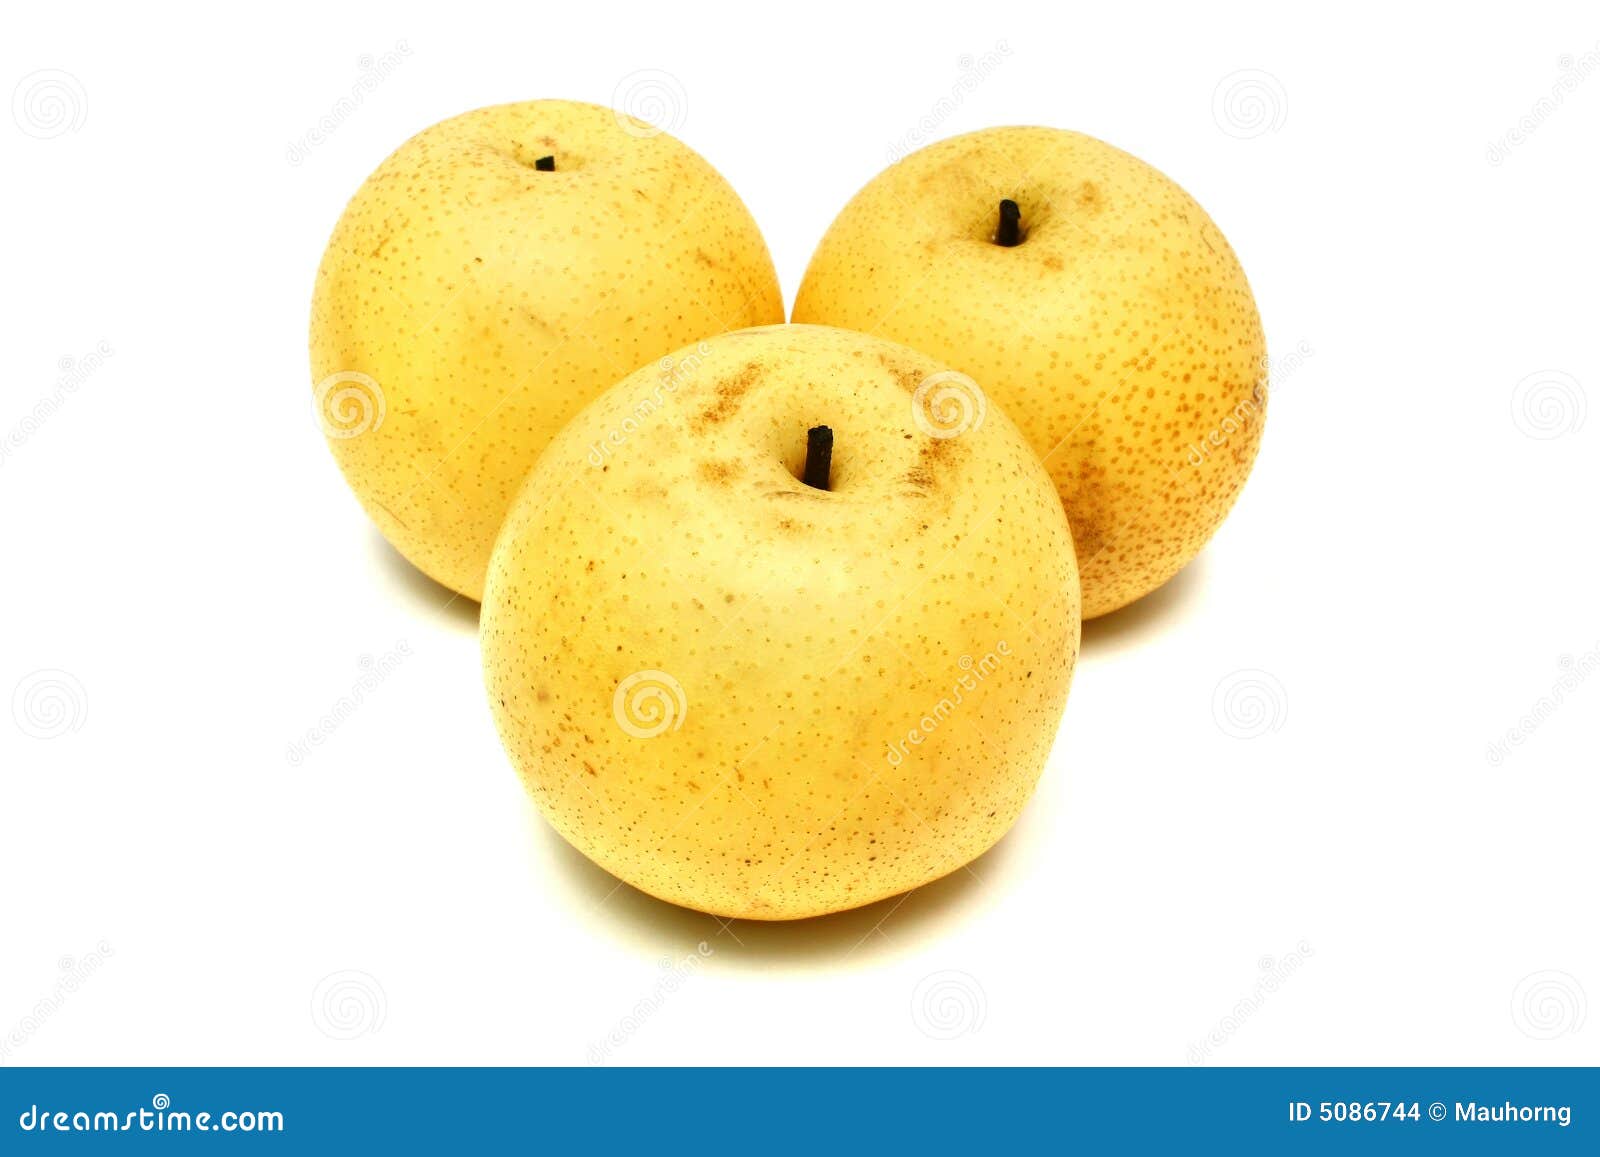 Three nashi pear isolated on white background.